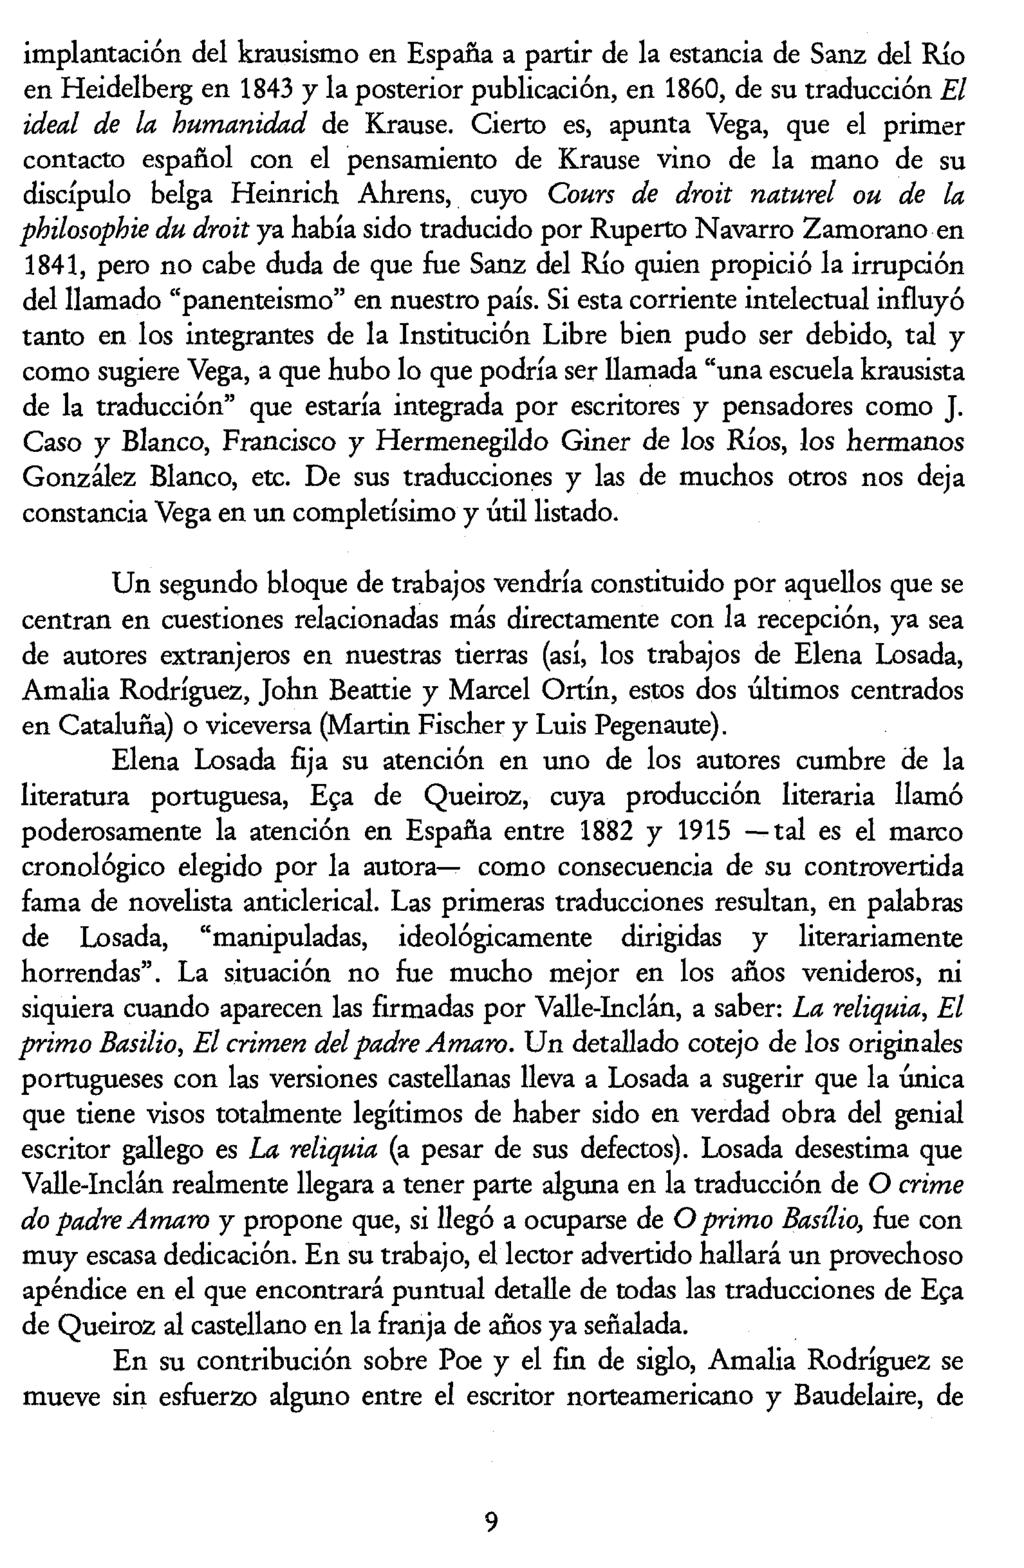 Luis Pegenaute (Ed.) La traducción en la Edad de Plata picture